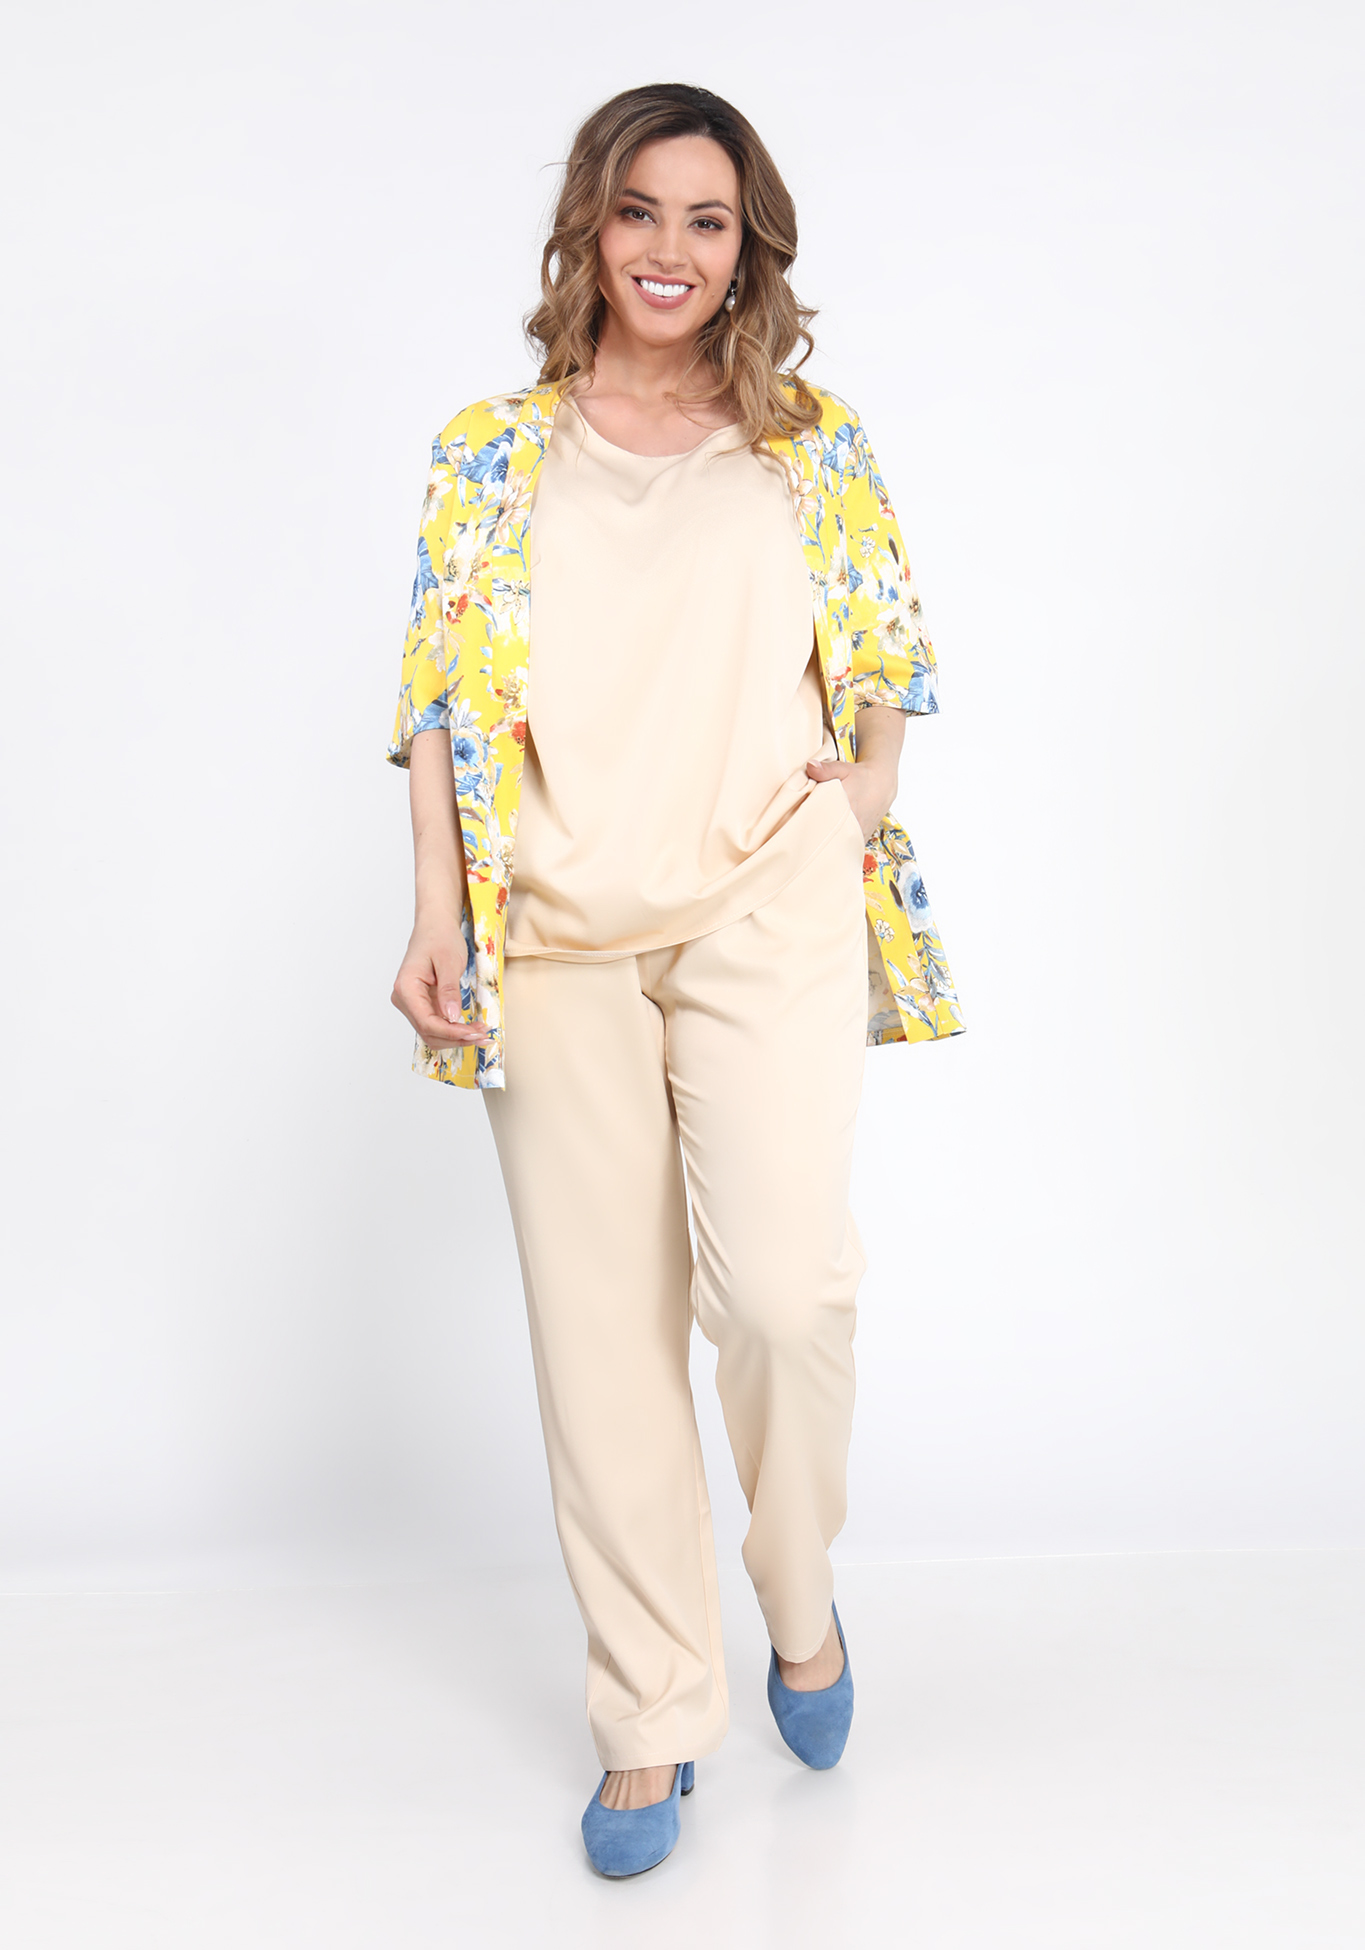 Костюм тройка: Жакет, блуза и брюки Bianka Modeno, размер 50, цвет желто-бежевый прямая модель - фото 6